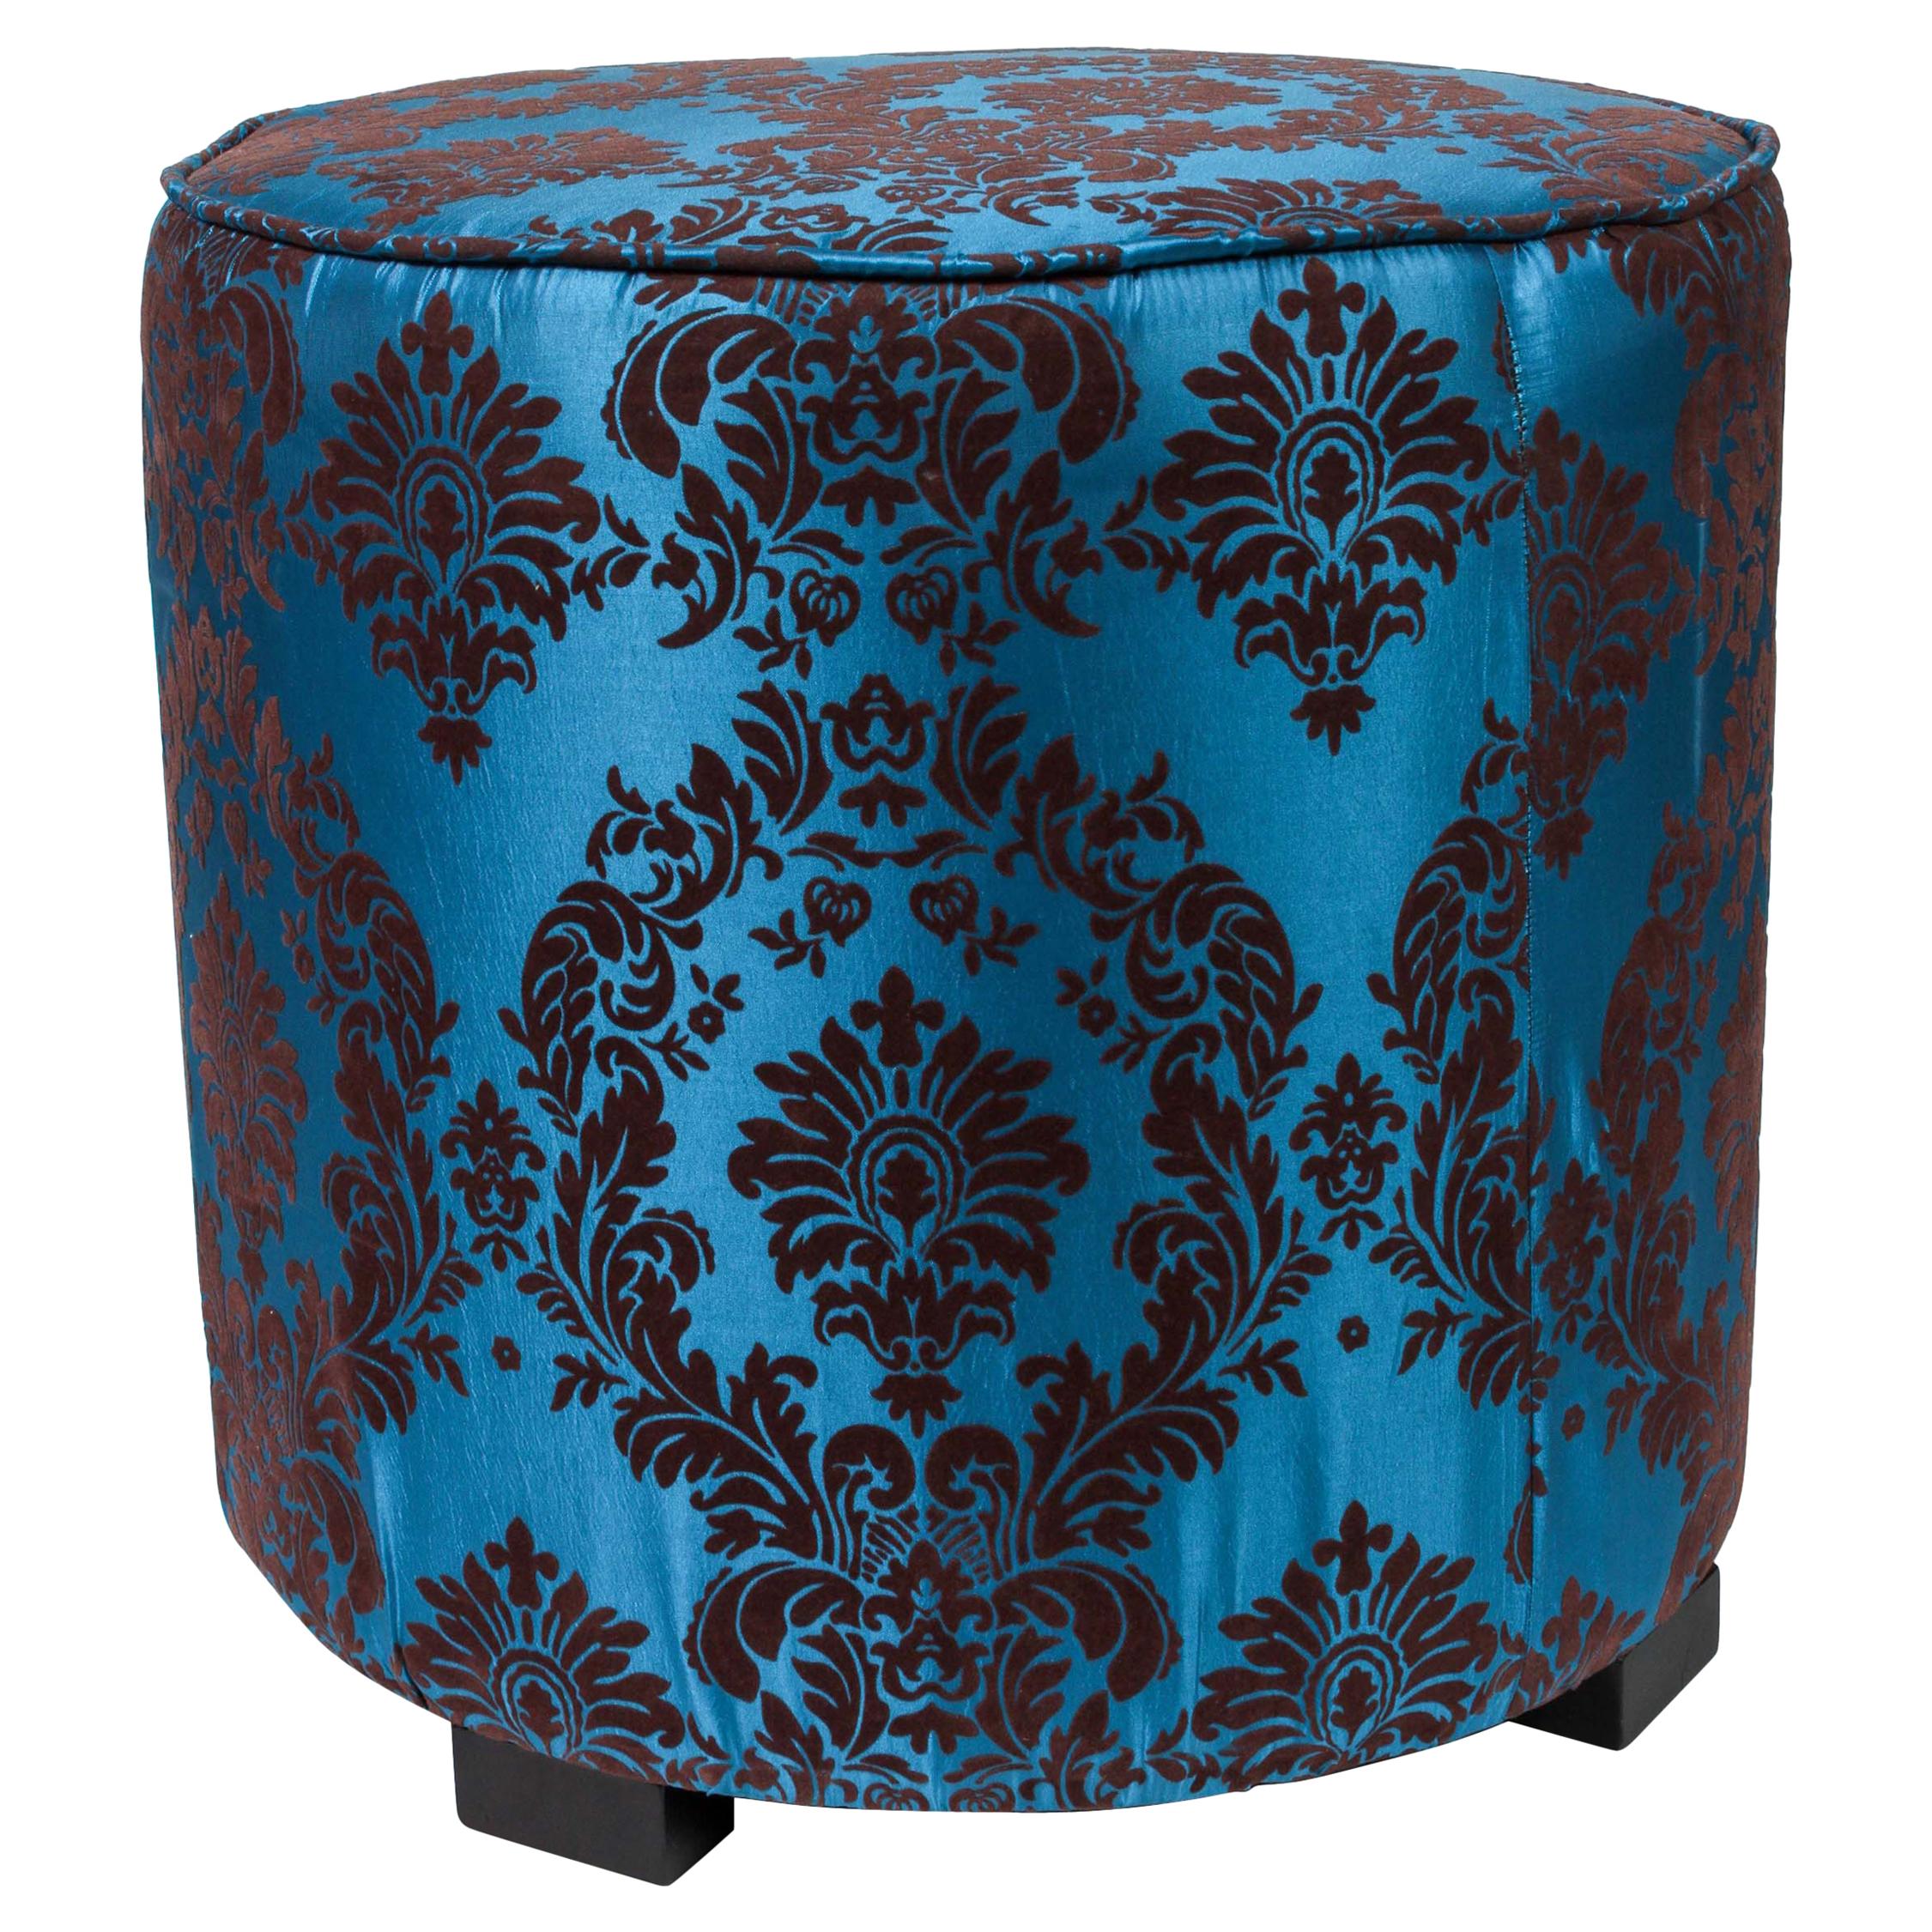 Tabouret rond marocain bleu cobalt tapissé de style Art Déco